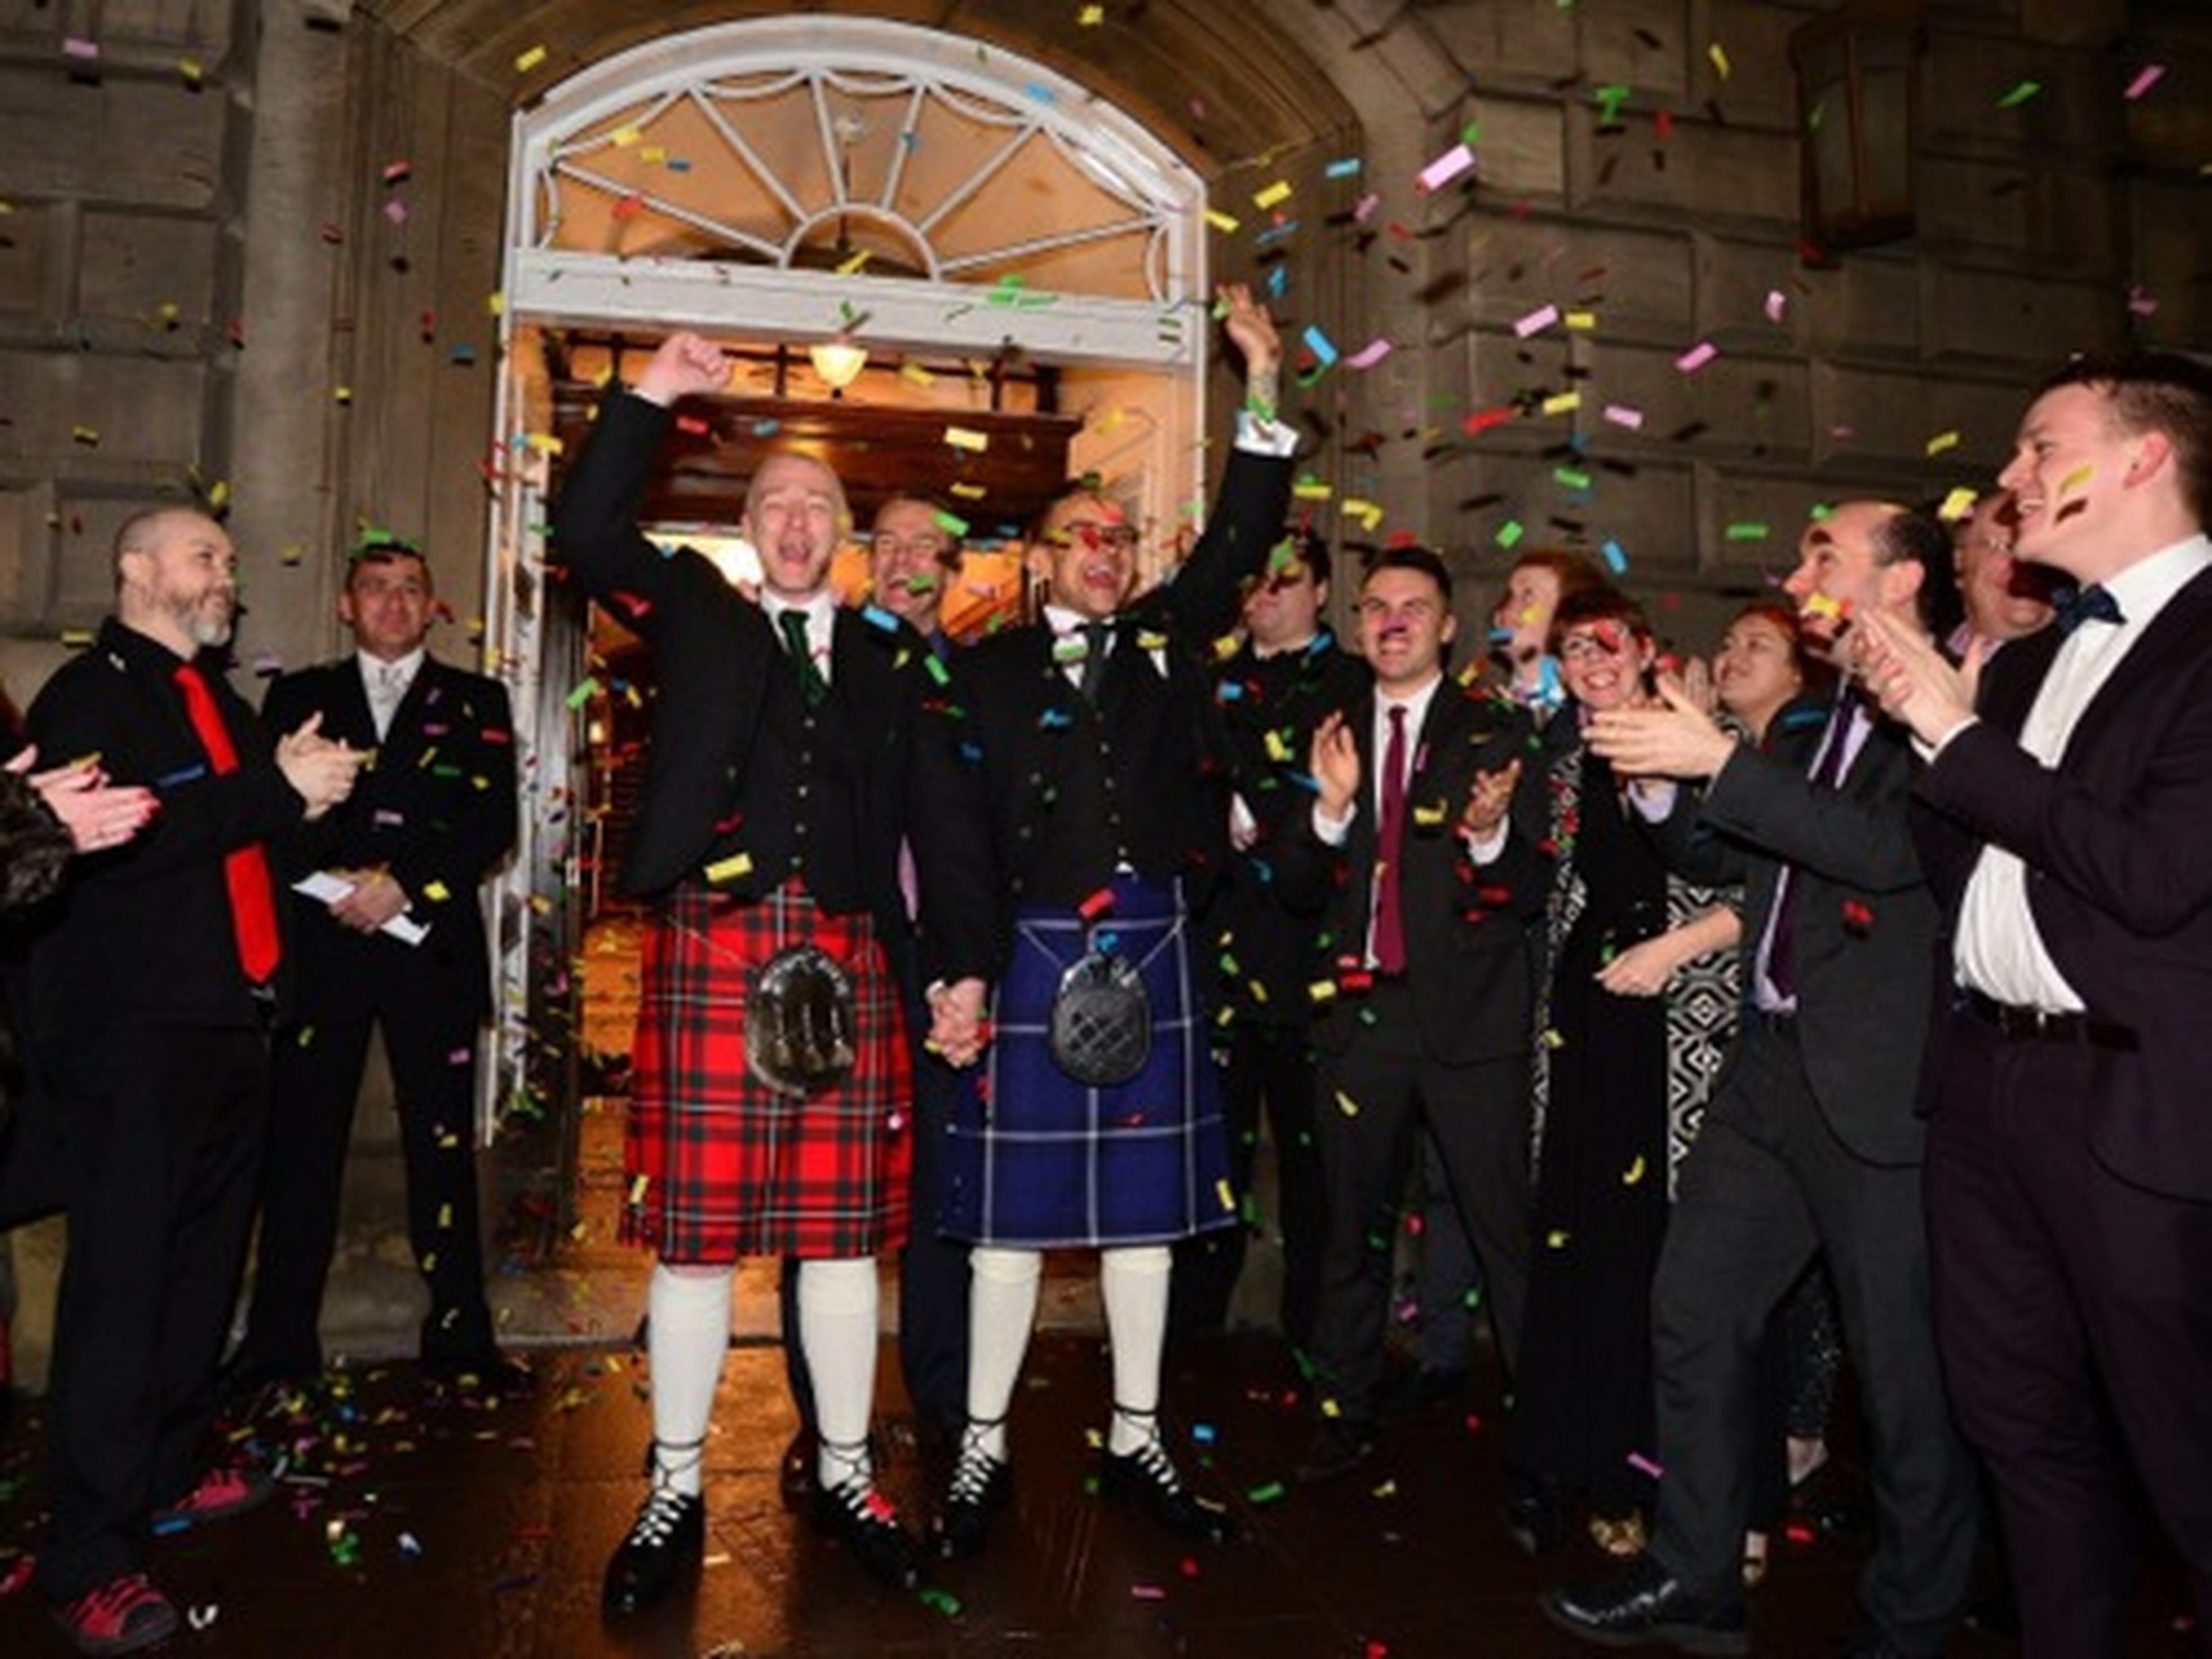 Una pareja contrae matrimonio poco después de la medianoche, en uno de los primeros matrimonios entre personas del mismo sexo de Escocia, el 31 de marzo de 2014 en Glasgow (Escocia).